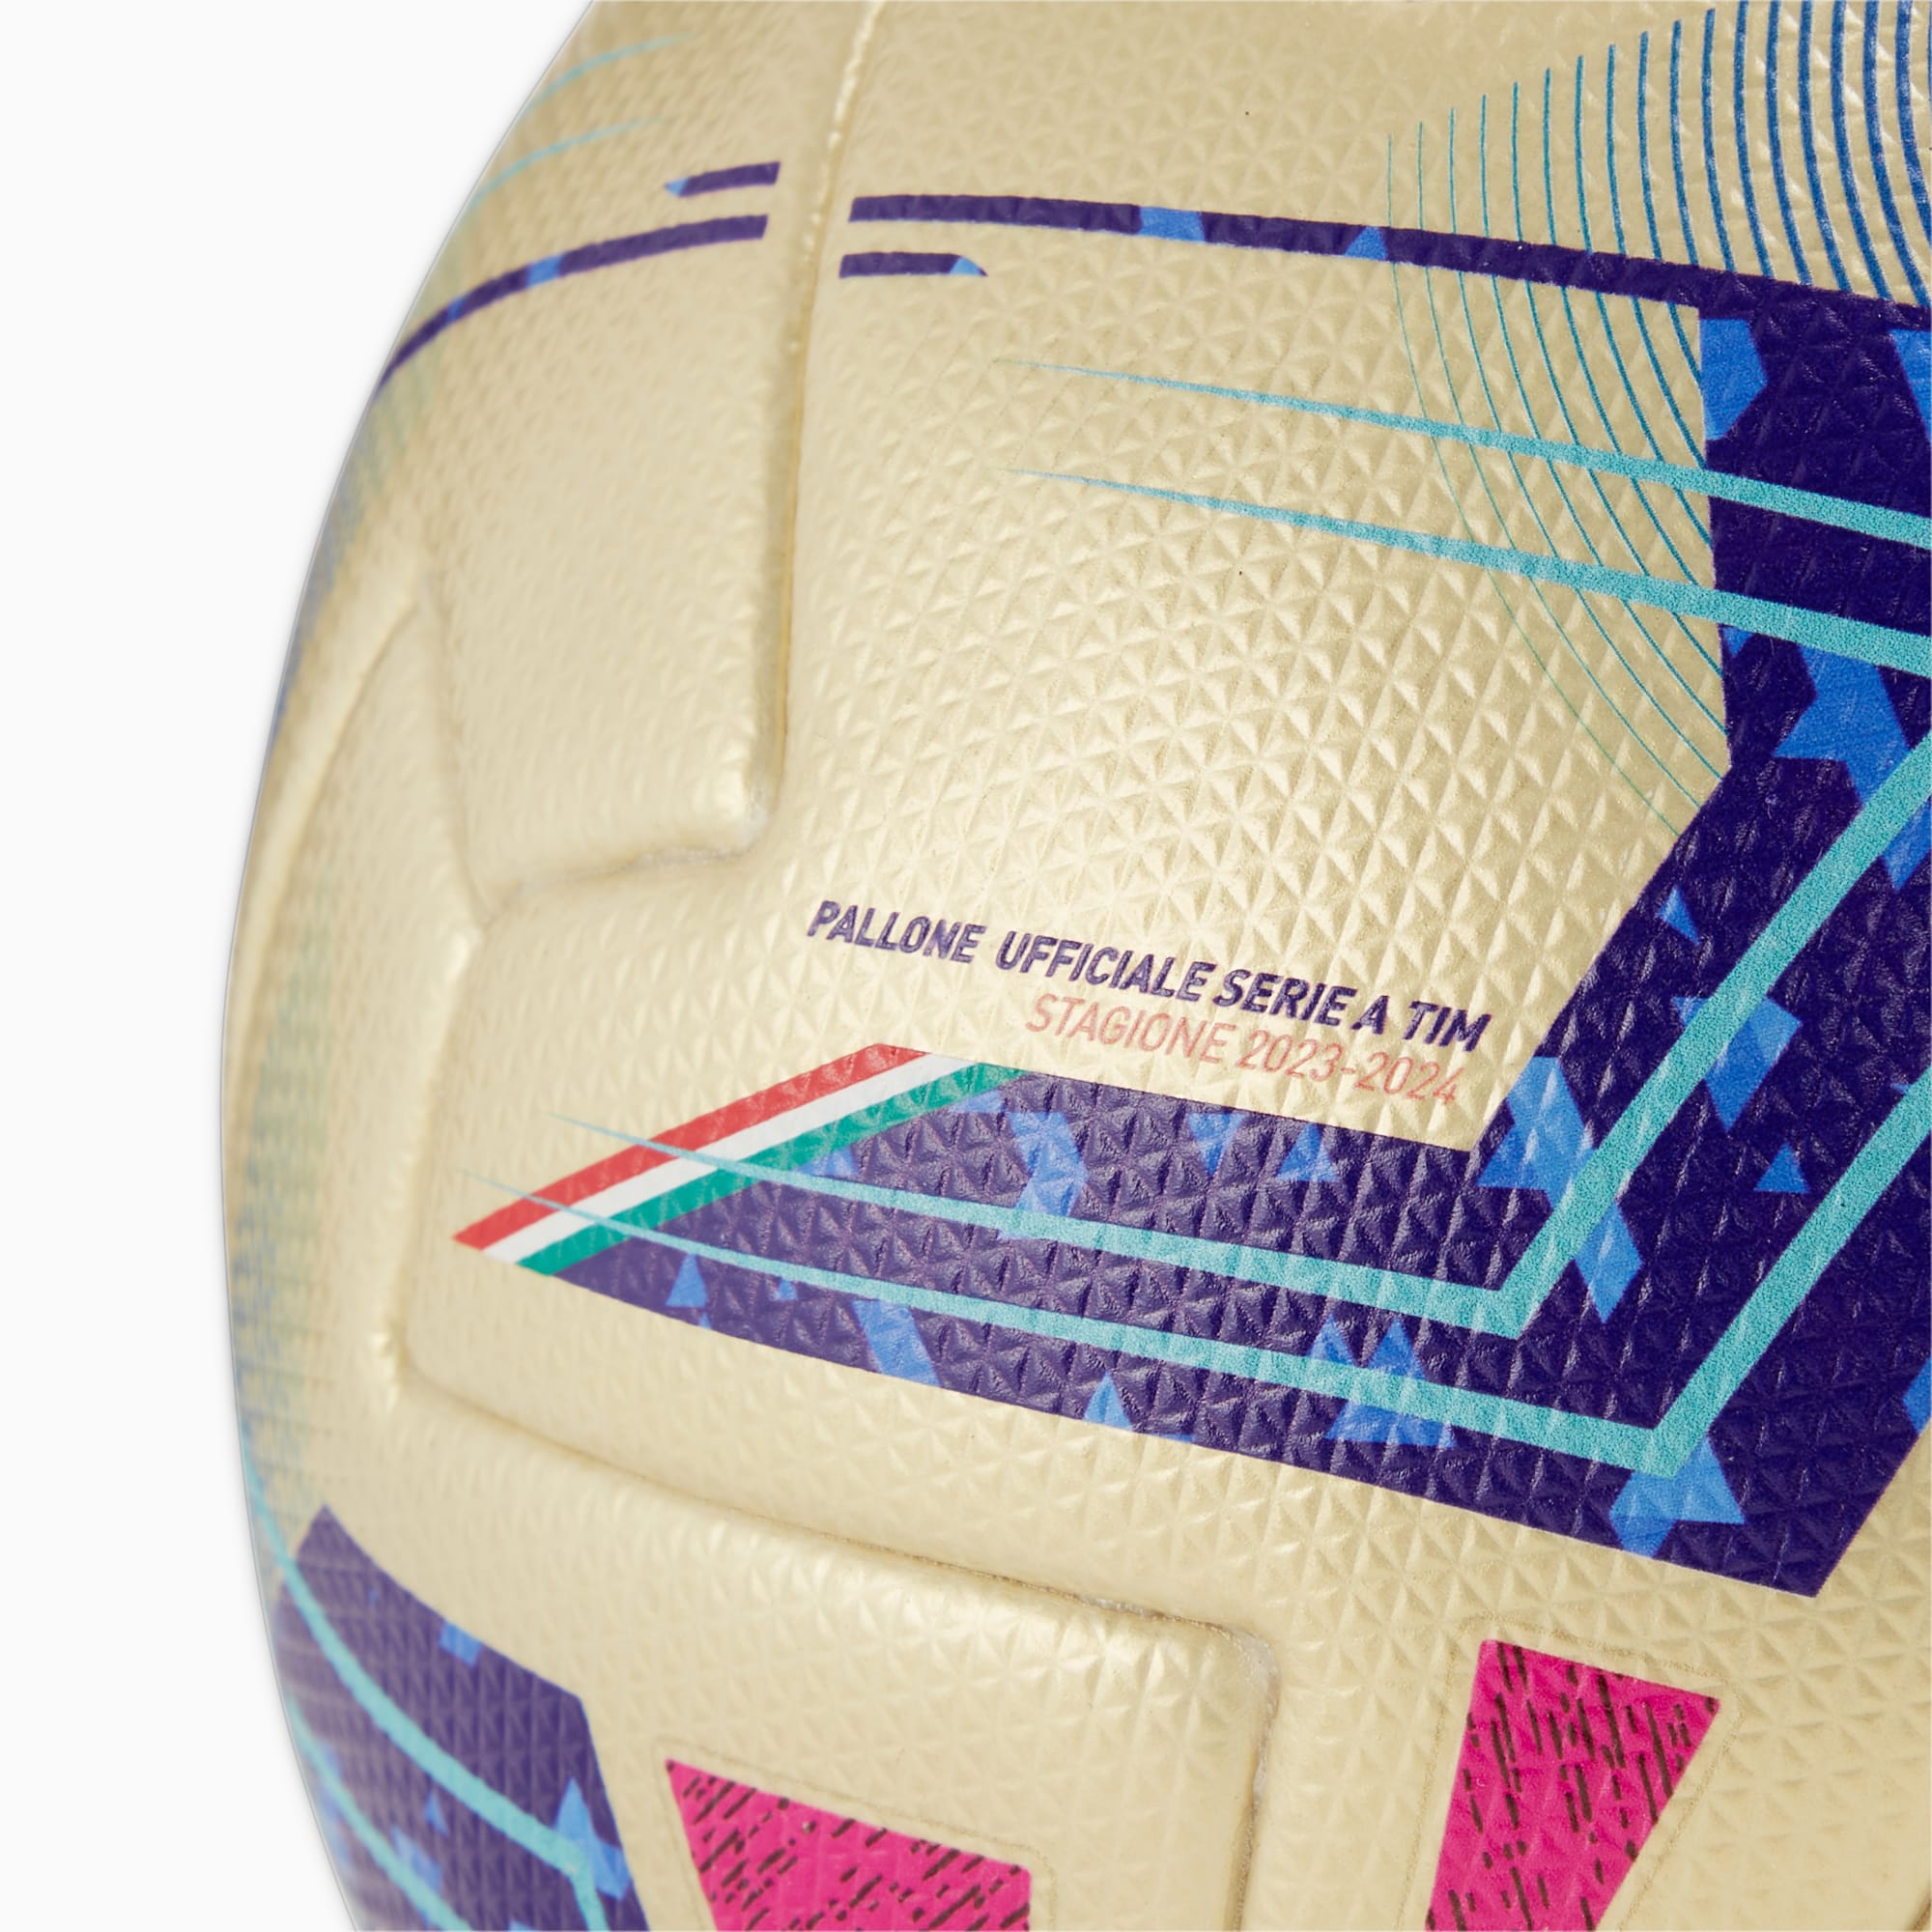 Pallone Da Calcio Serie A Edizione Speciale FIFA Quality Pro Per Donna, Blu/Rosa/Oro/Altro